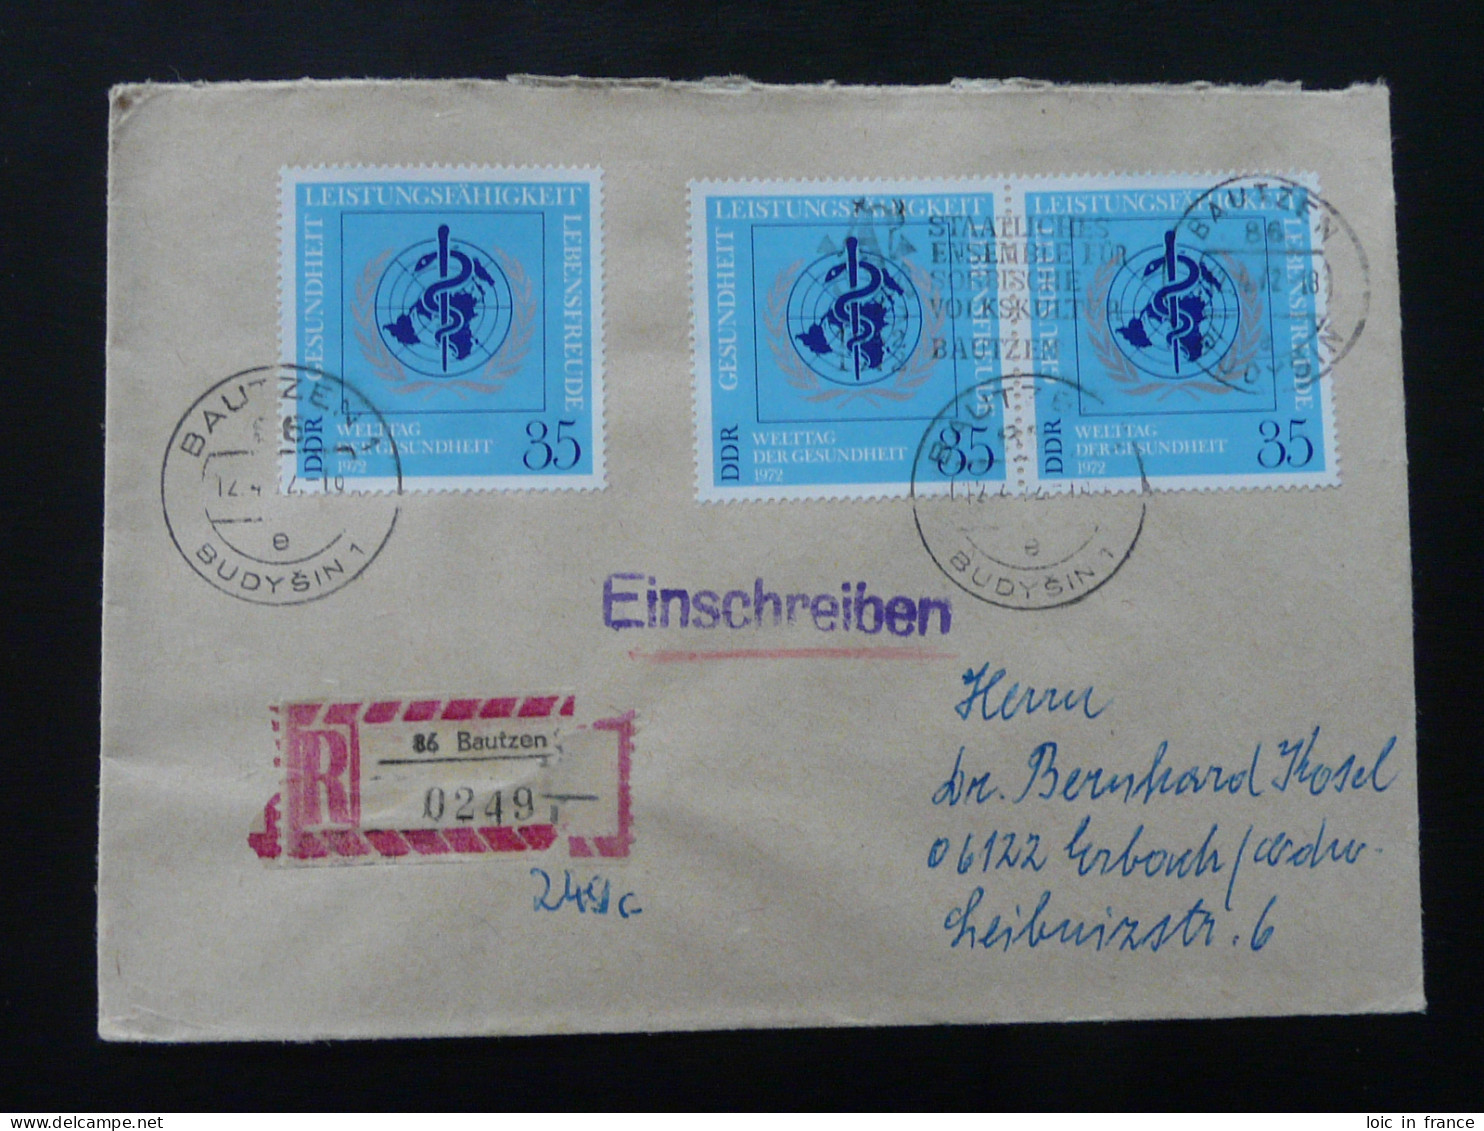 OMS WHO Lettre Recommandée Registered Cover Einschreiben Brief Bautzen DDR Ref 179 - WHO